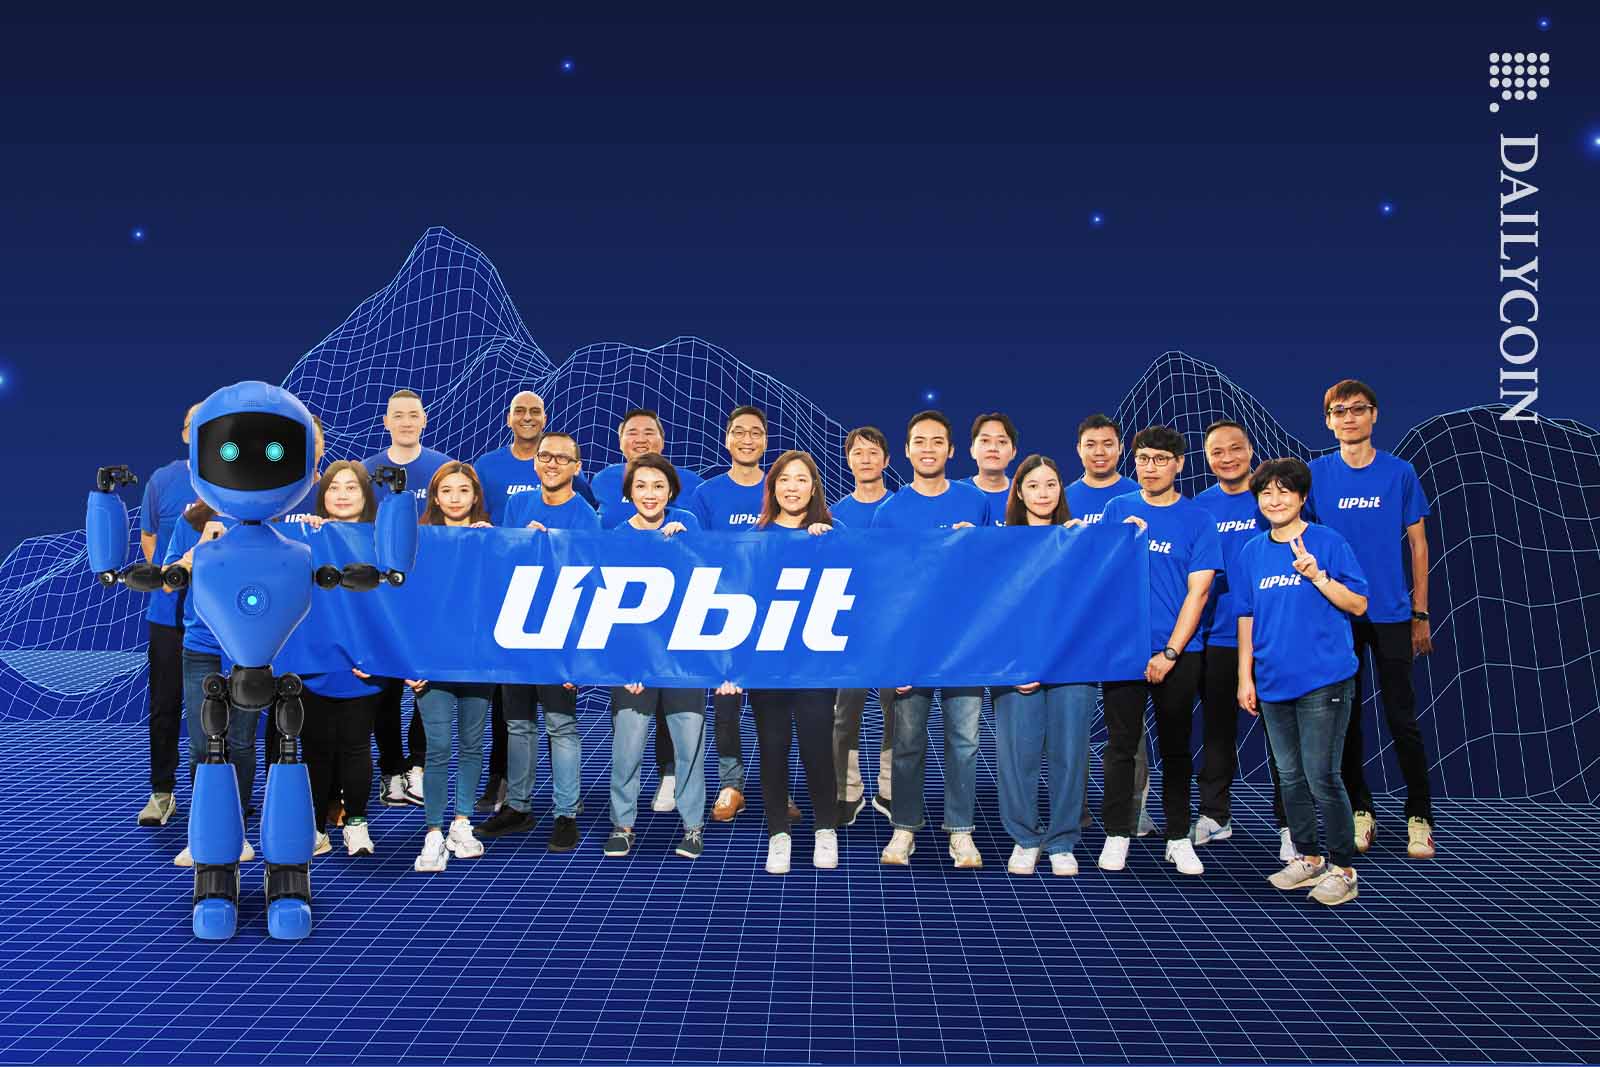 Upbit team holding up an Upbit sign in a digital landscape.